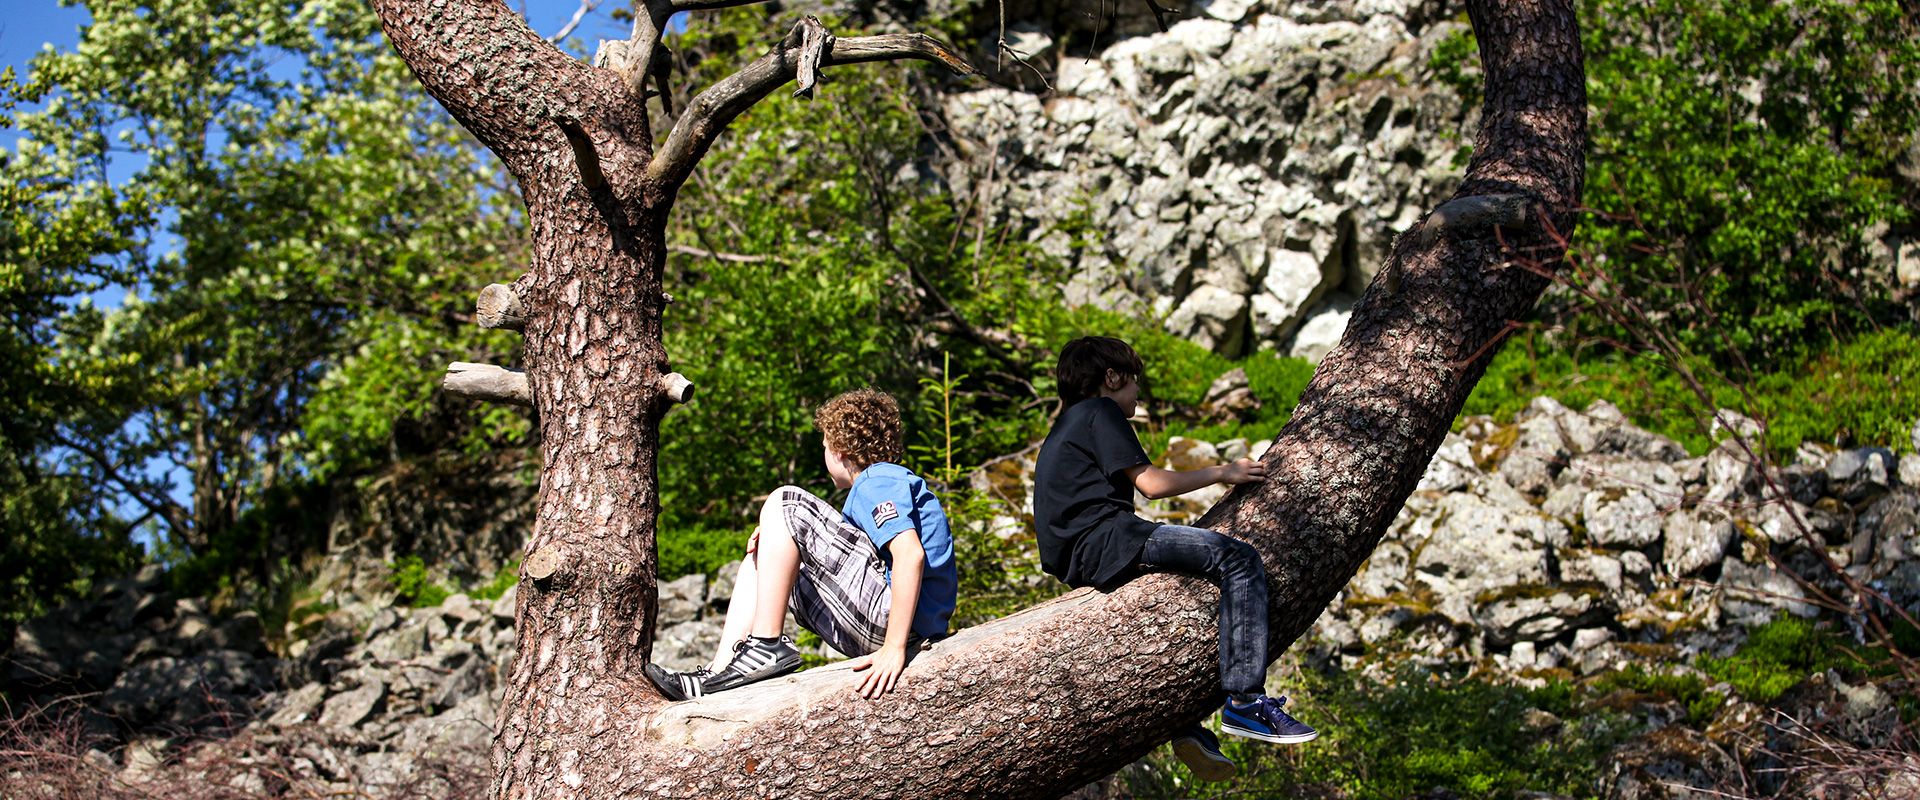 Kinder auf einem Baum 